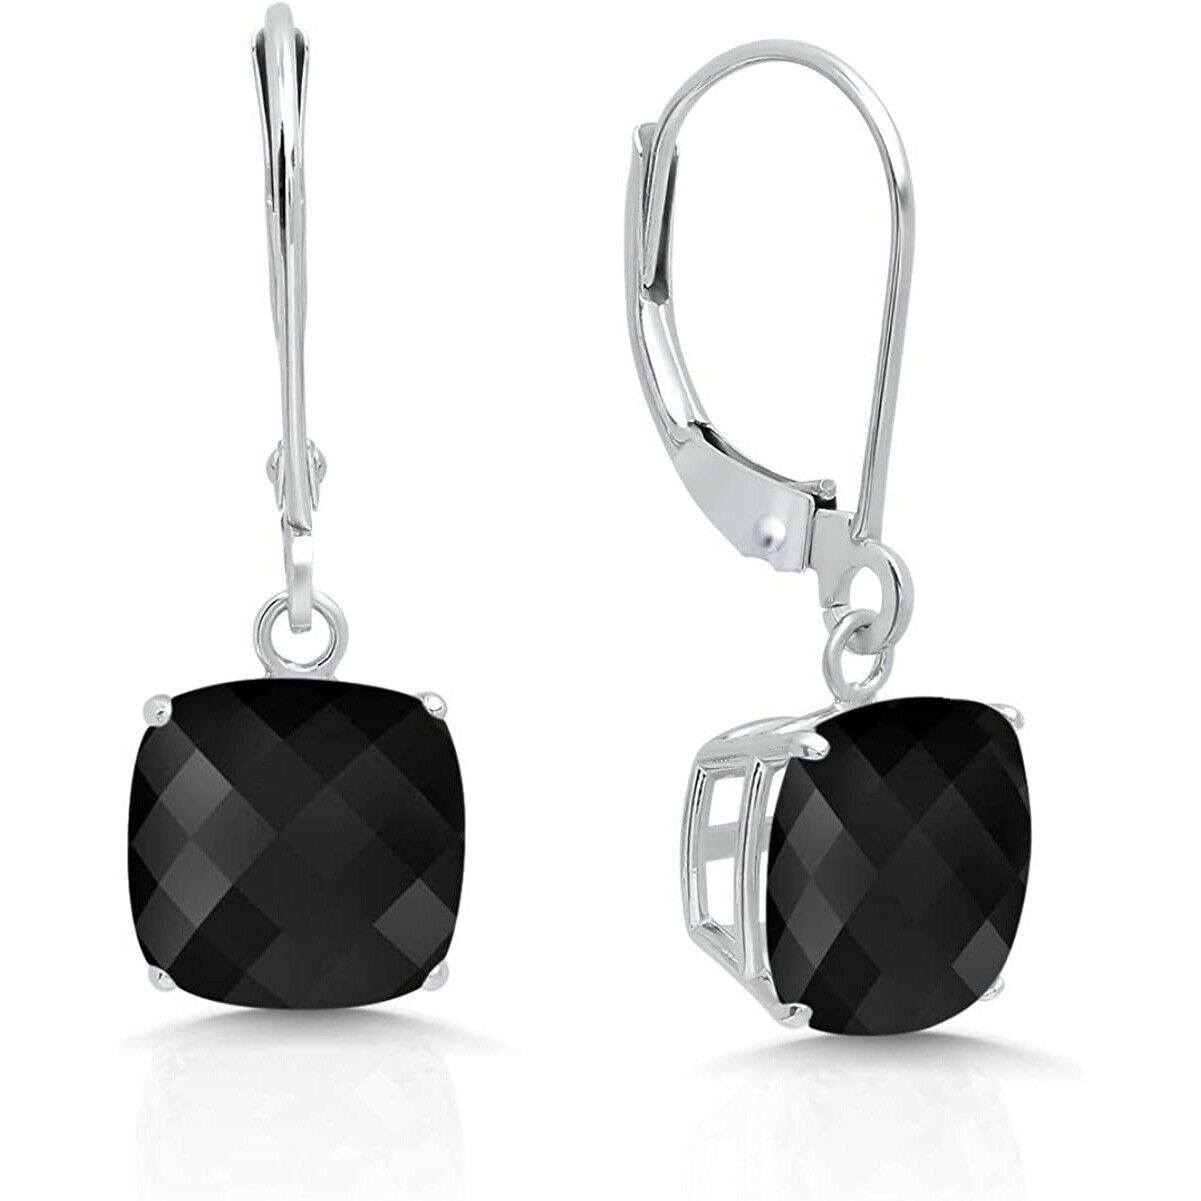 Unbranded - Men women's  silver square stud earrings  2,3,4,5,6,7,8,9,10mm